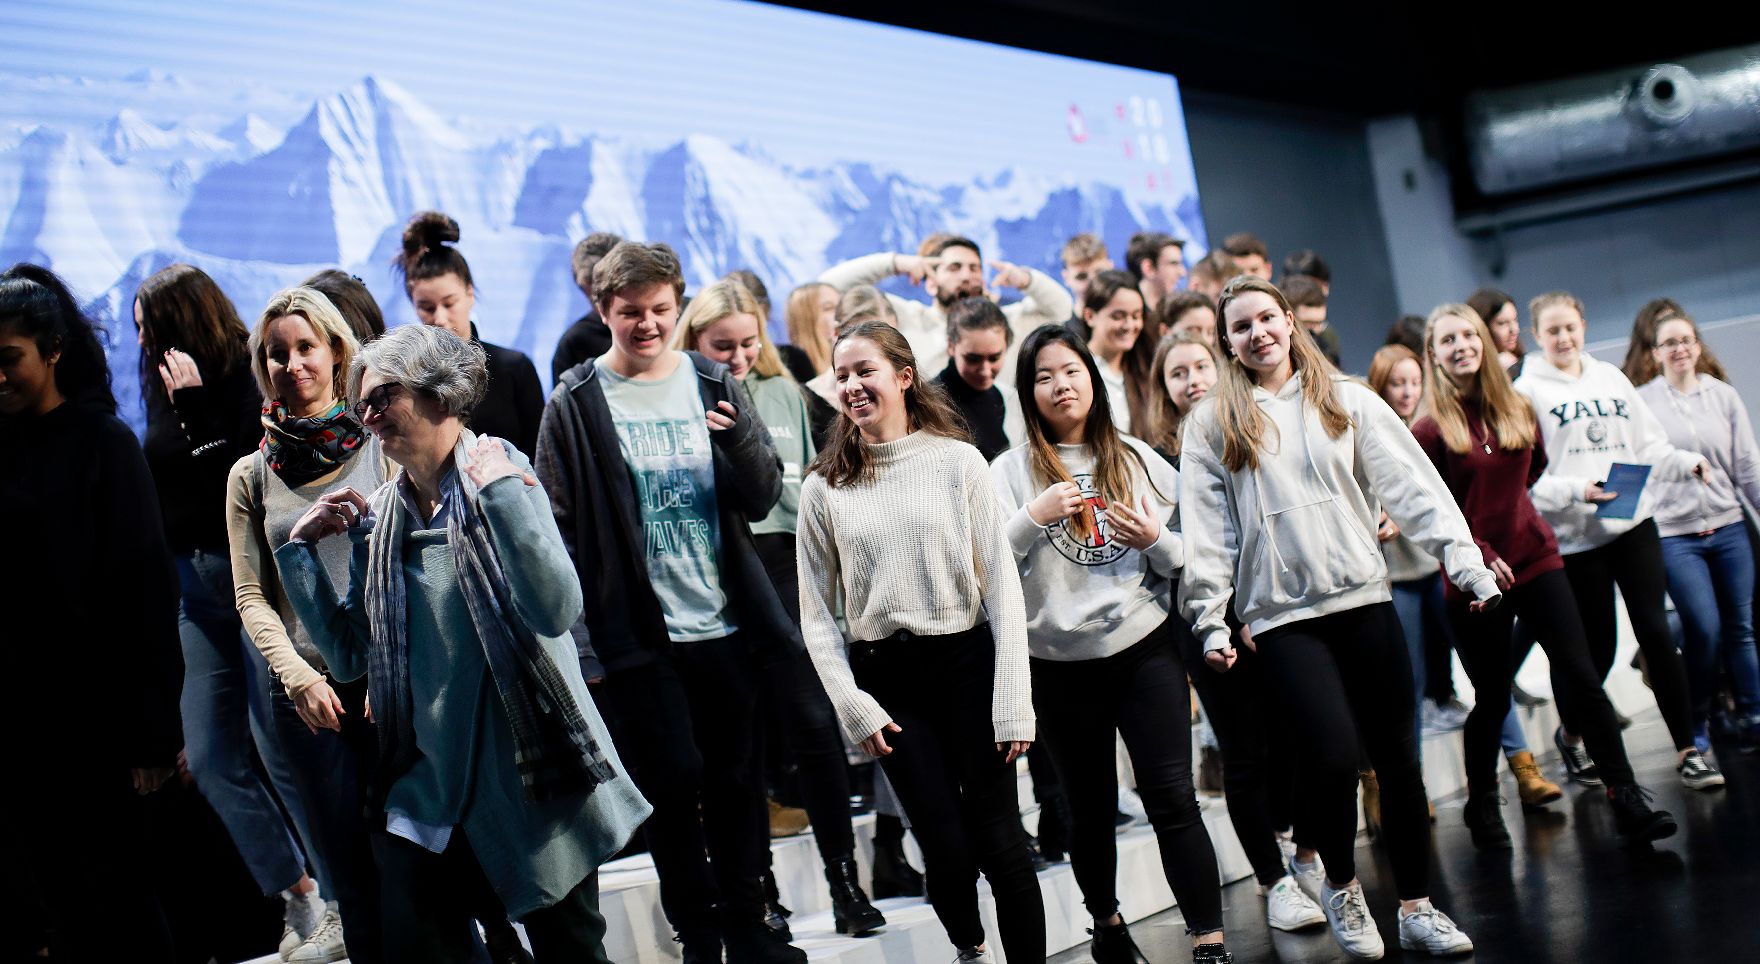 Am 19. Dezember 2018 fand eine Tag der offenen Tür im Austria Center Vienna statt zum Abschluss des EU-Ratvorsitzes. Im Bild Schüler bei der Besichtigung der Räume.